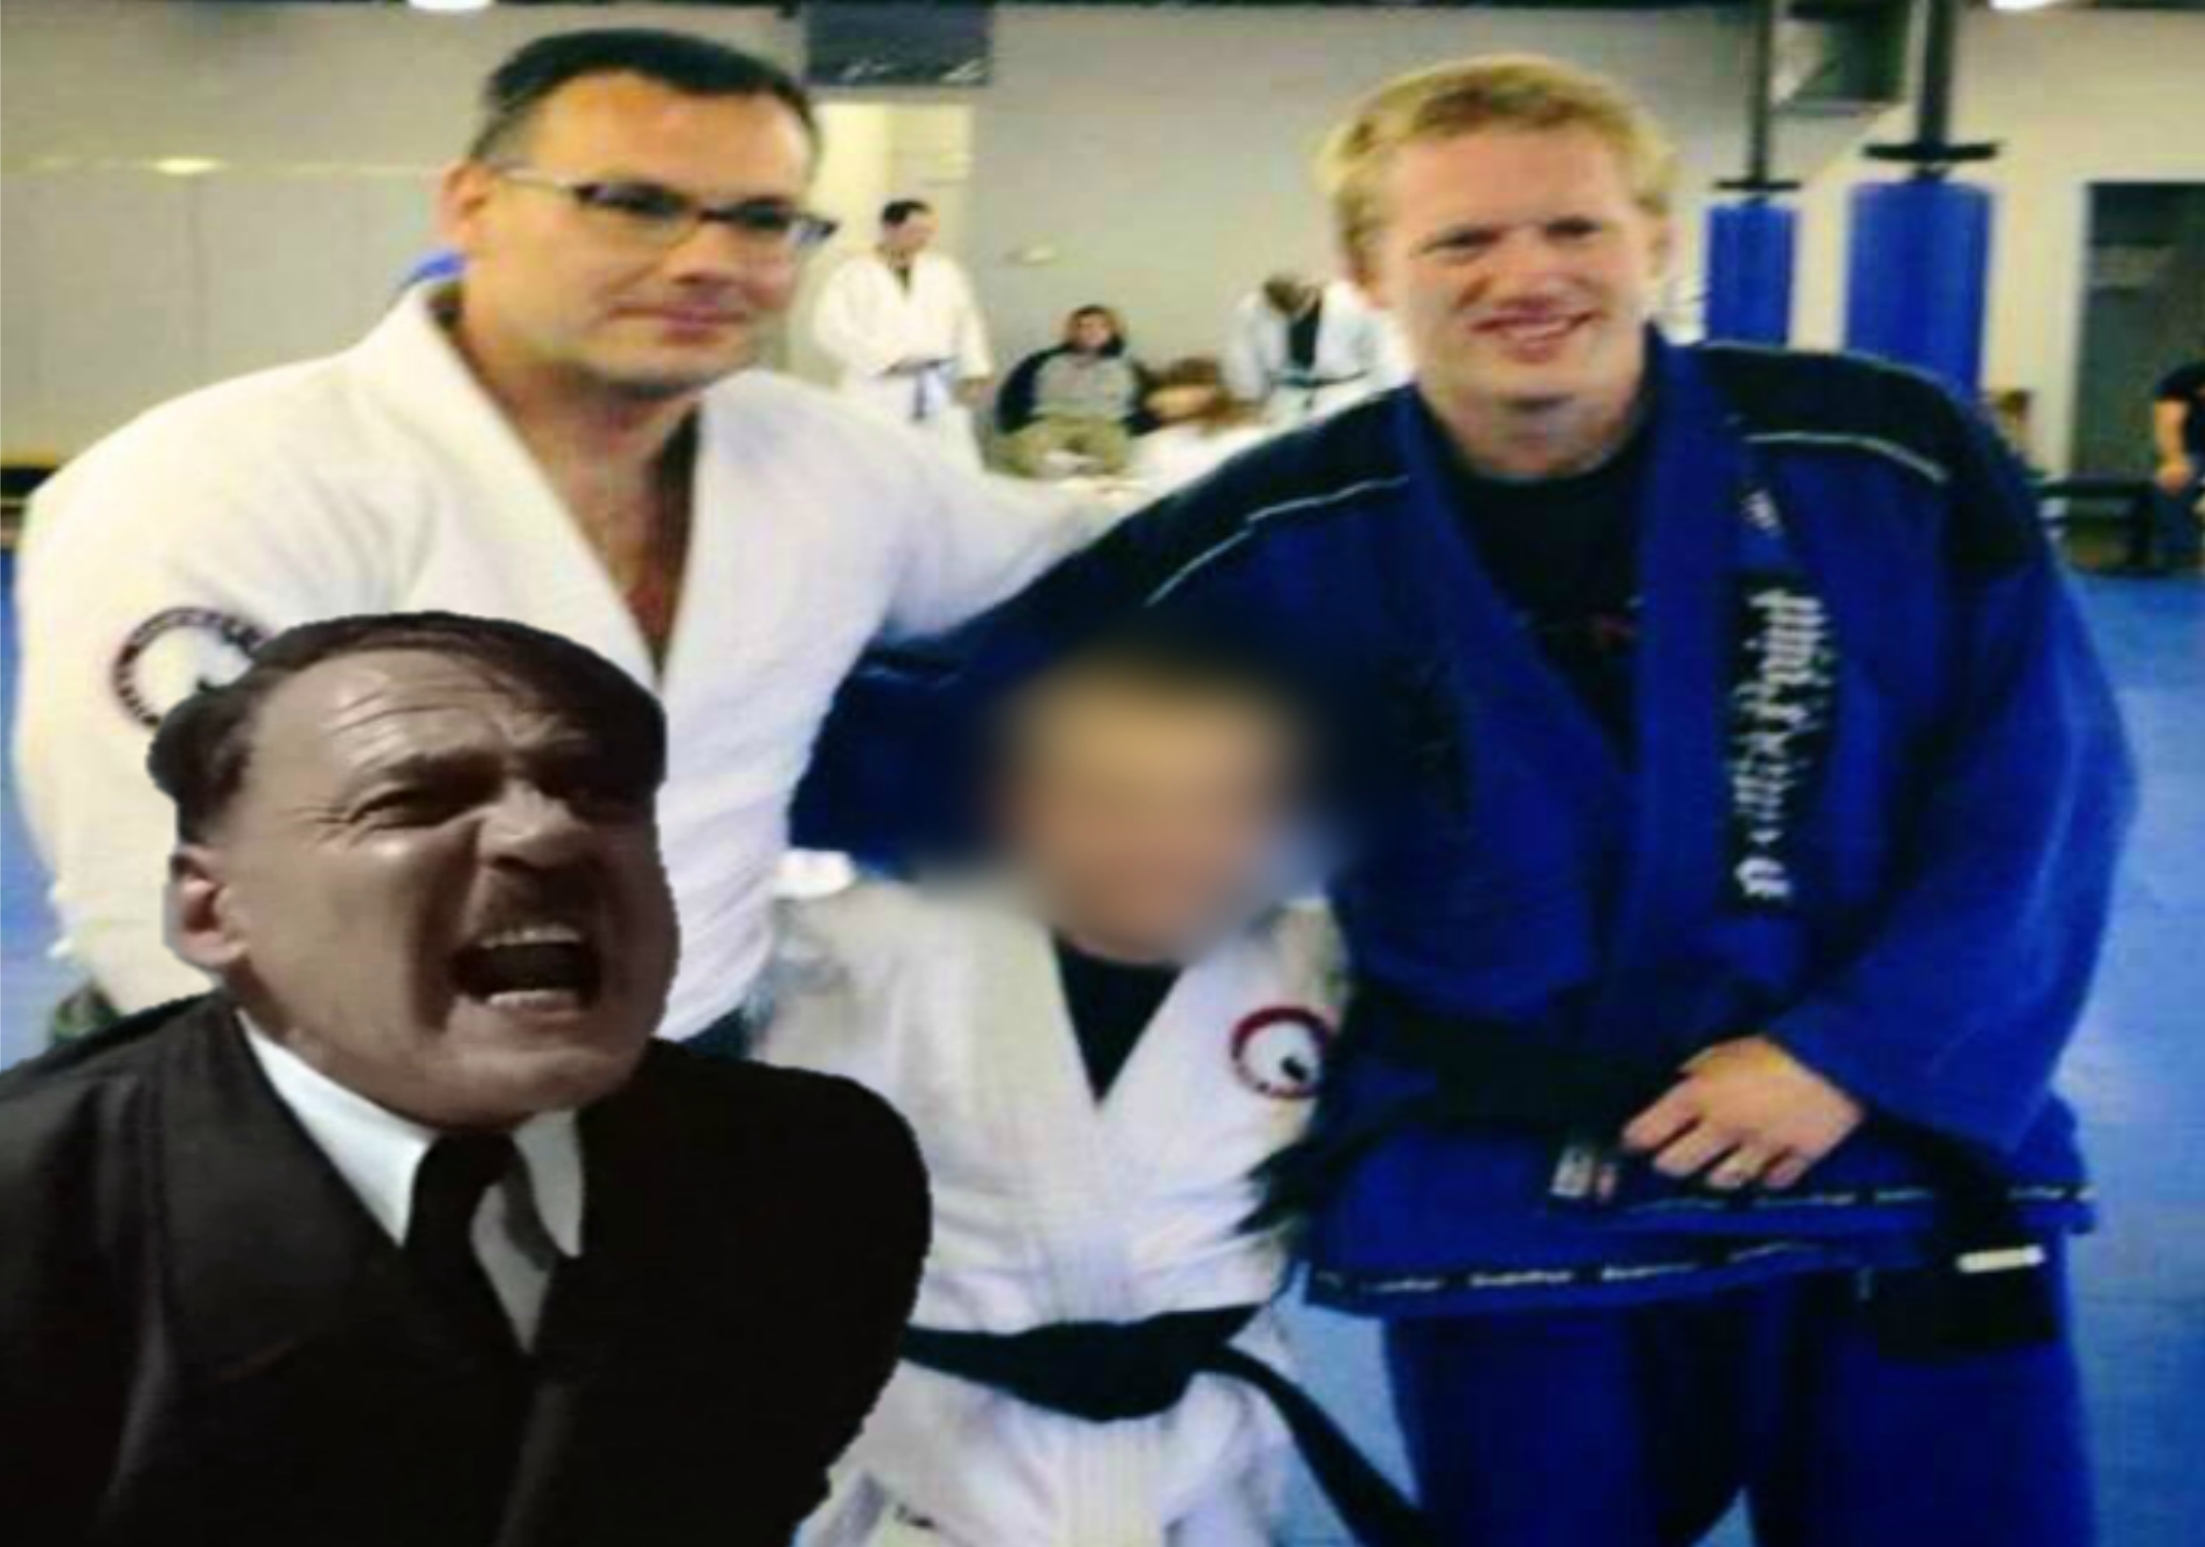 Funny Video: Hitler Finds out about ‘Junior BJJ Black belts’